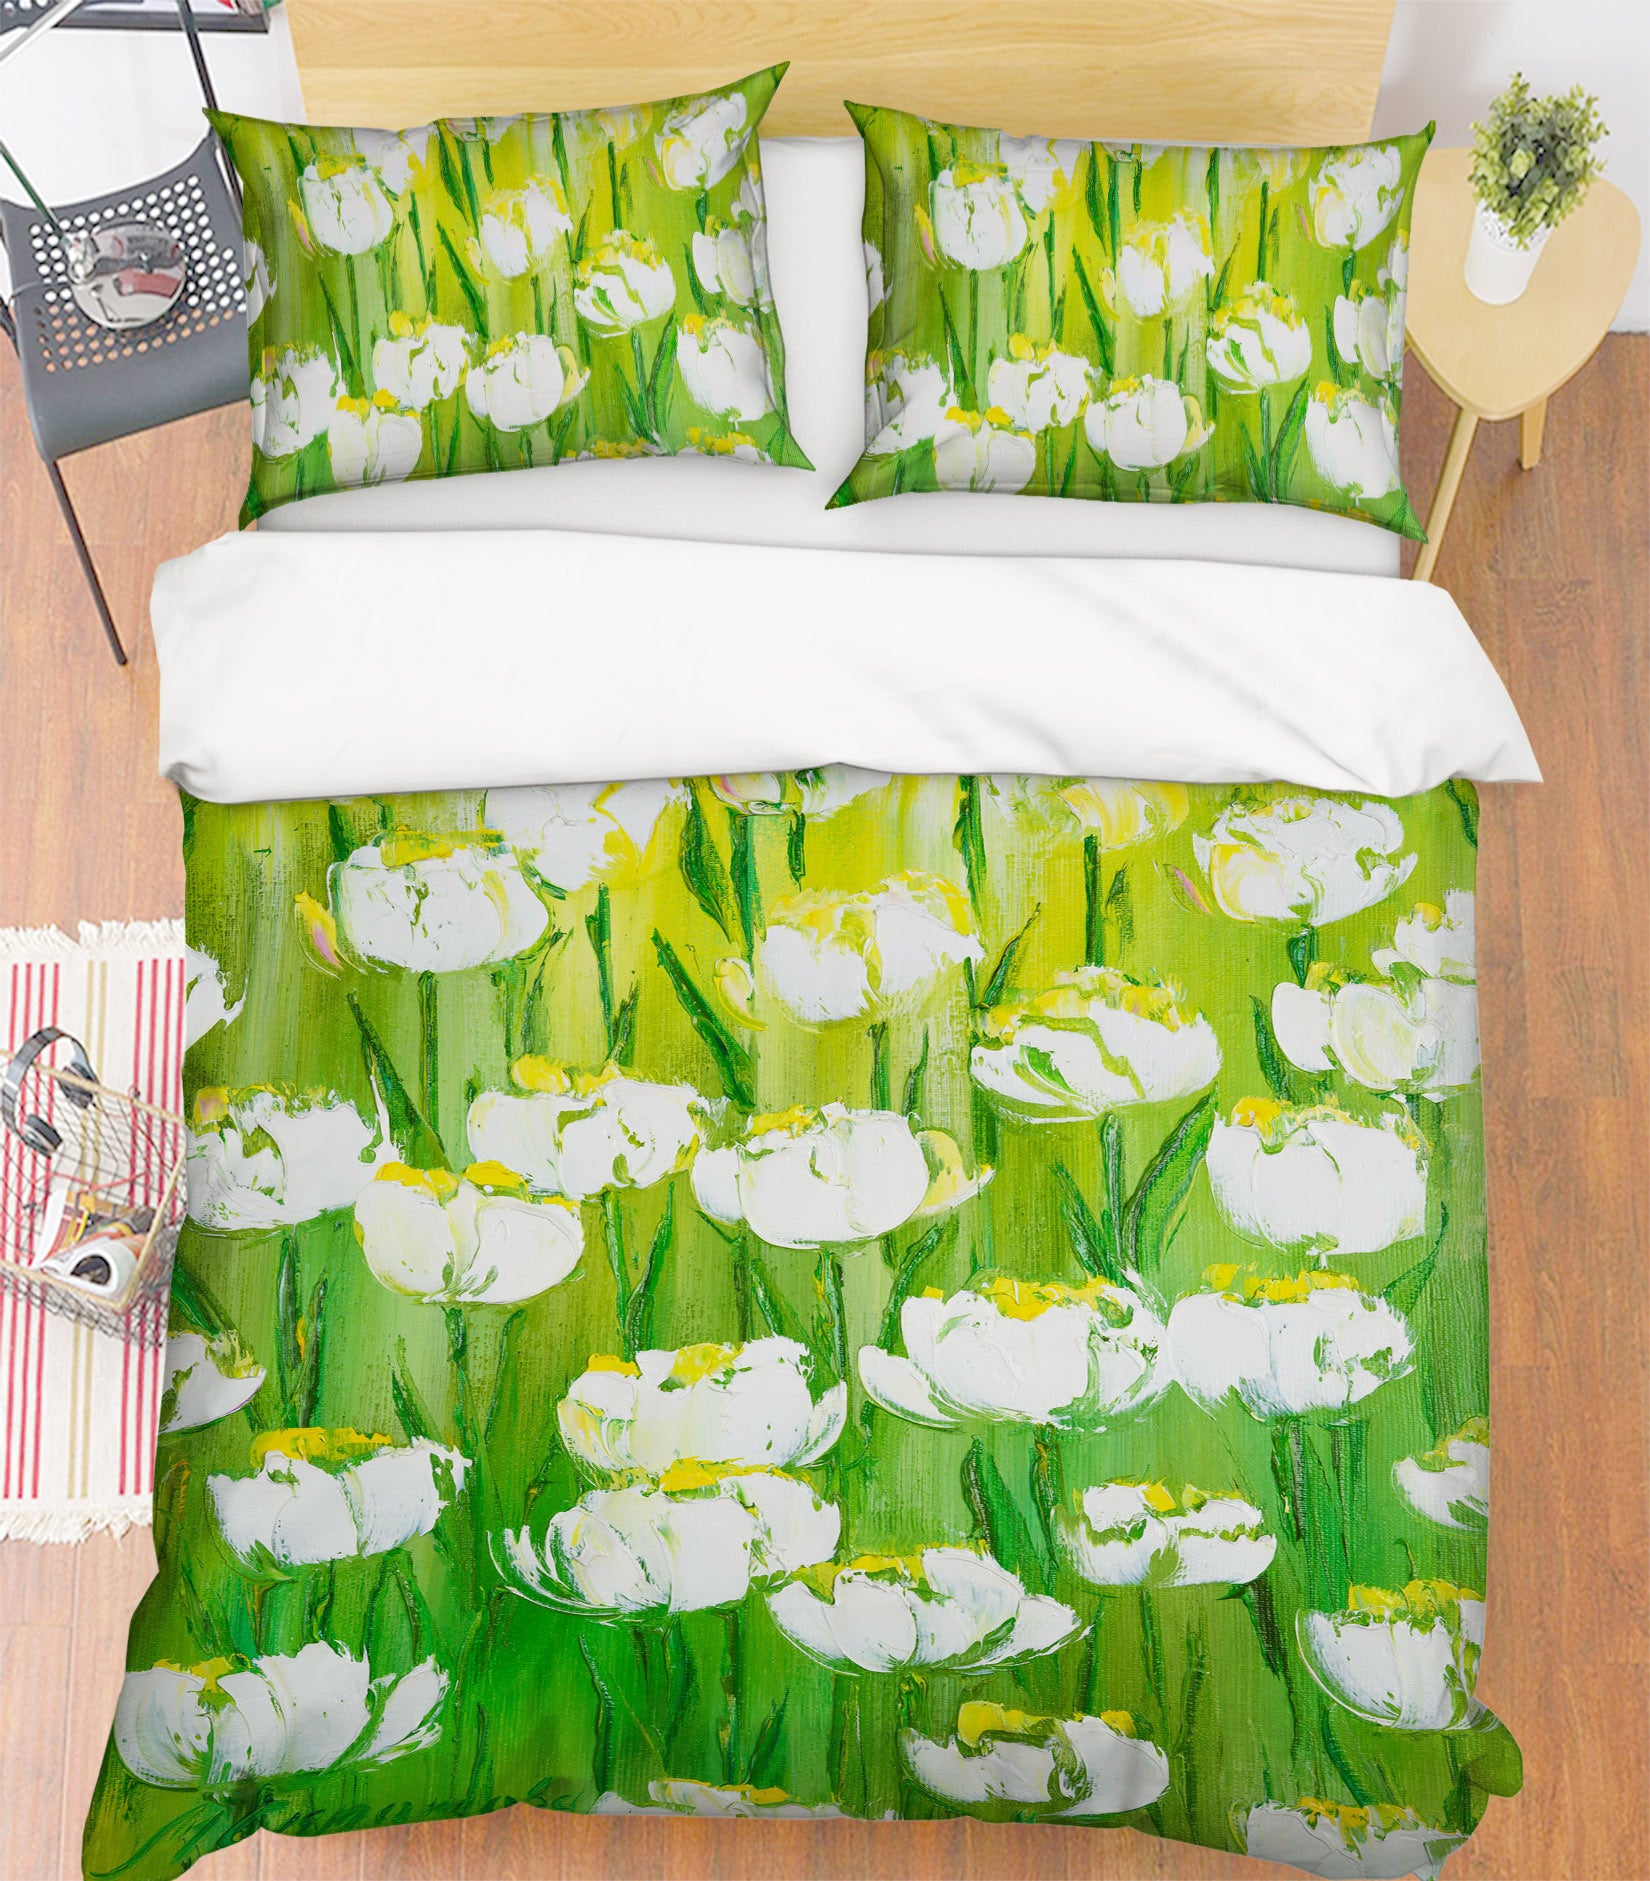 3D White Garden 525 Skromova Marina Bedding Bed Pillowcases Quilt